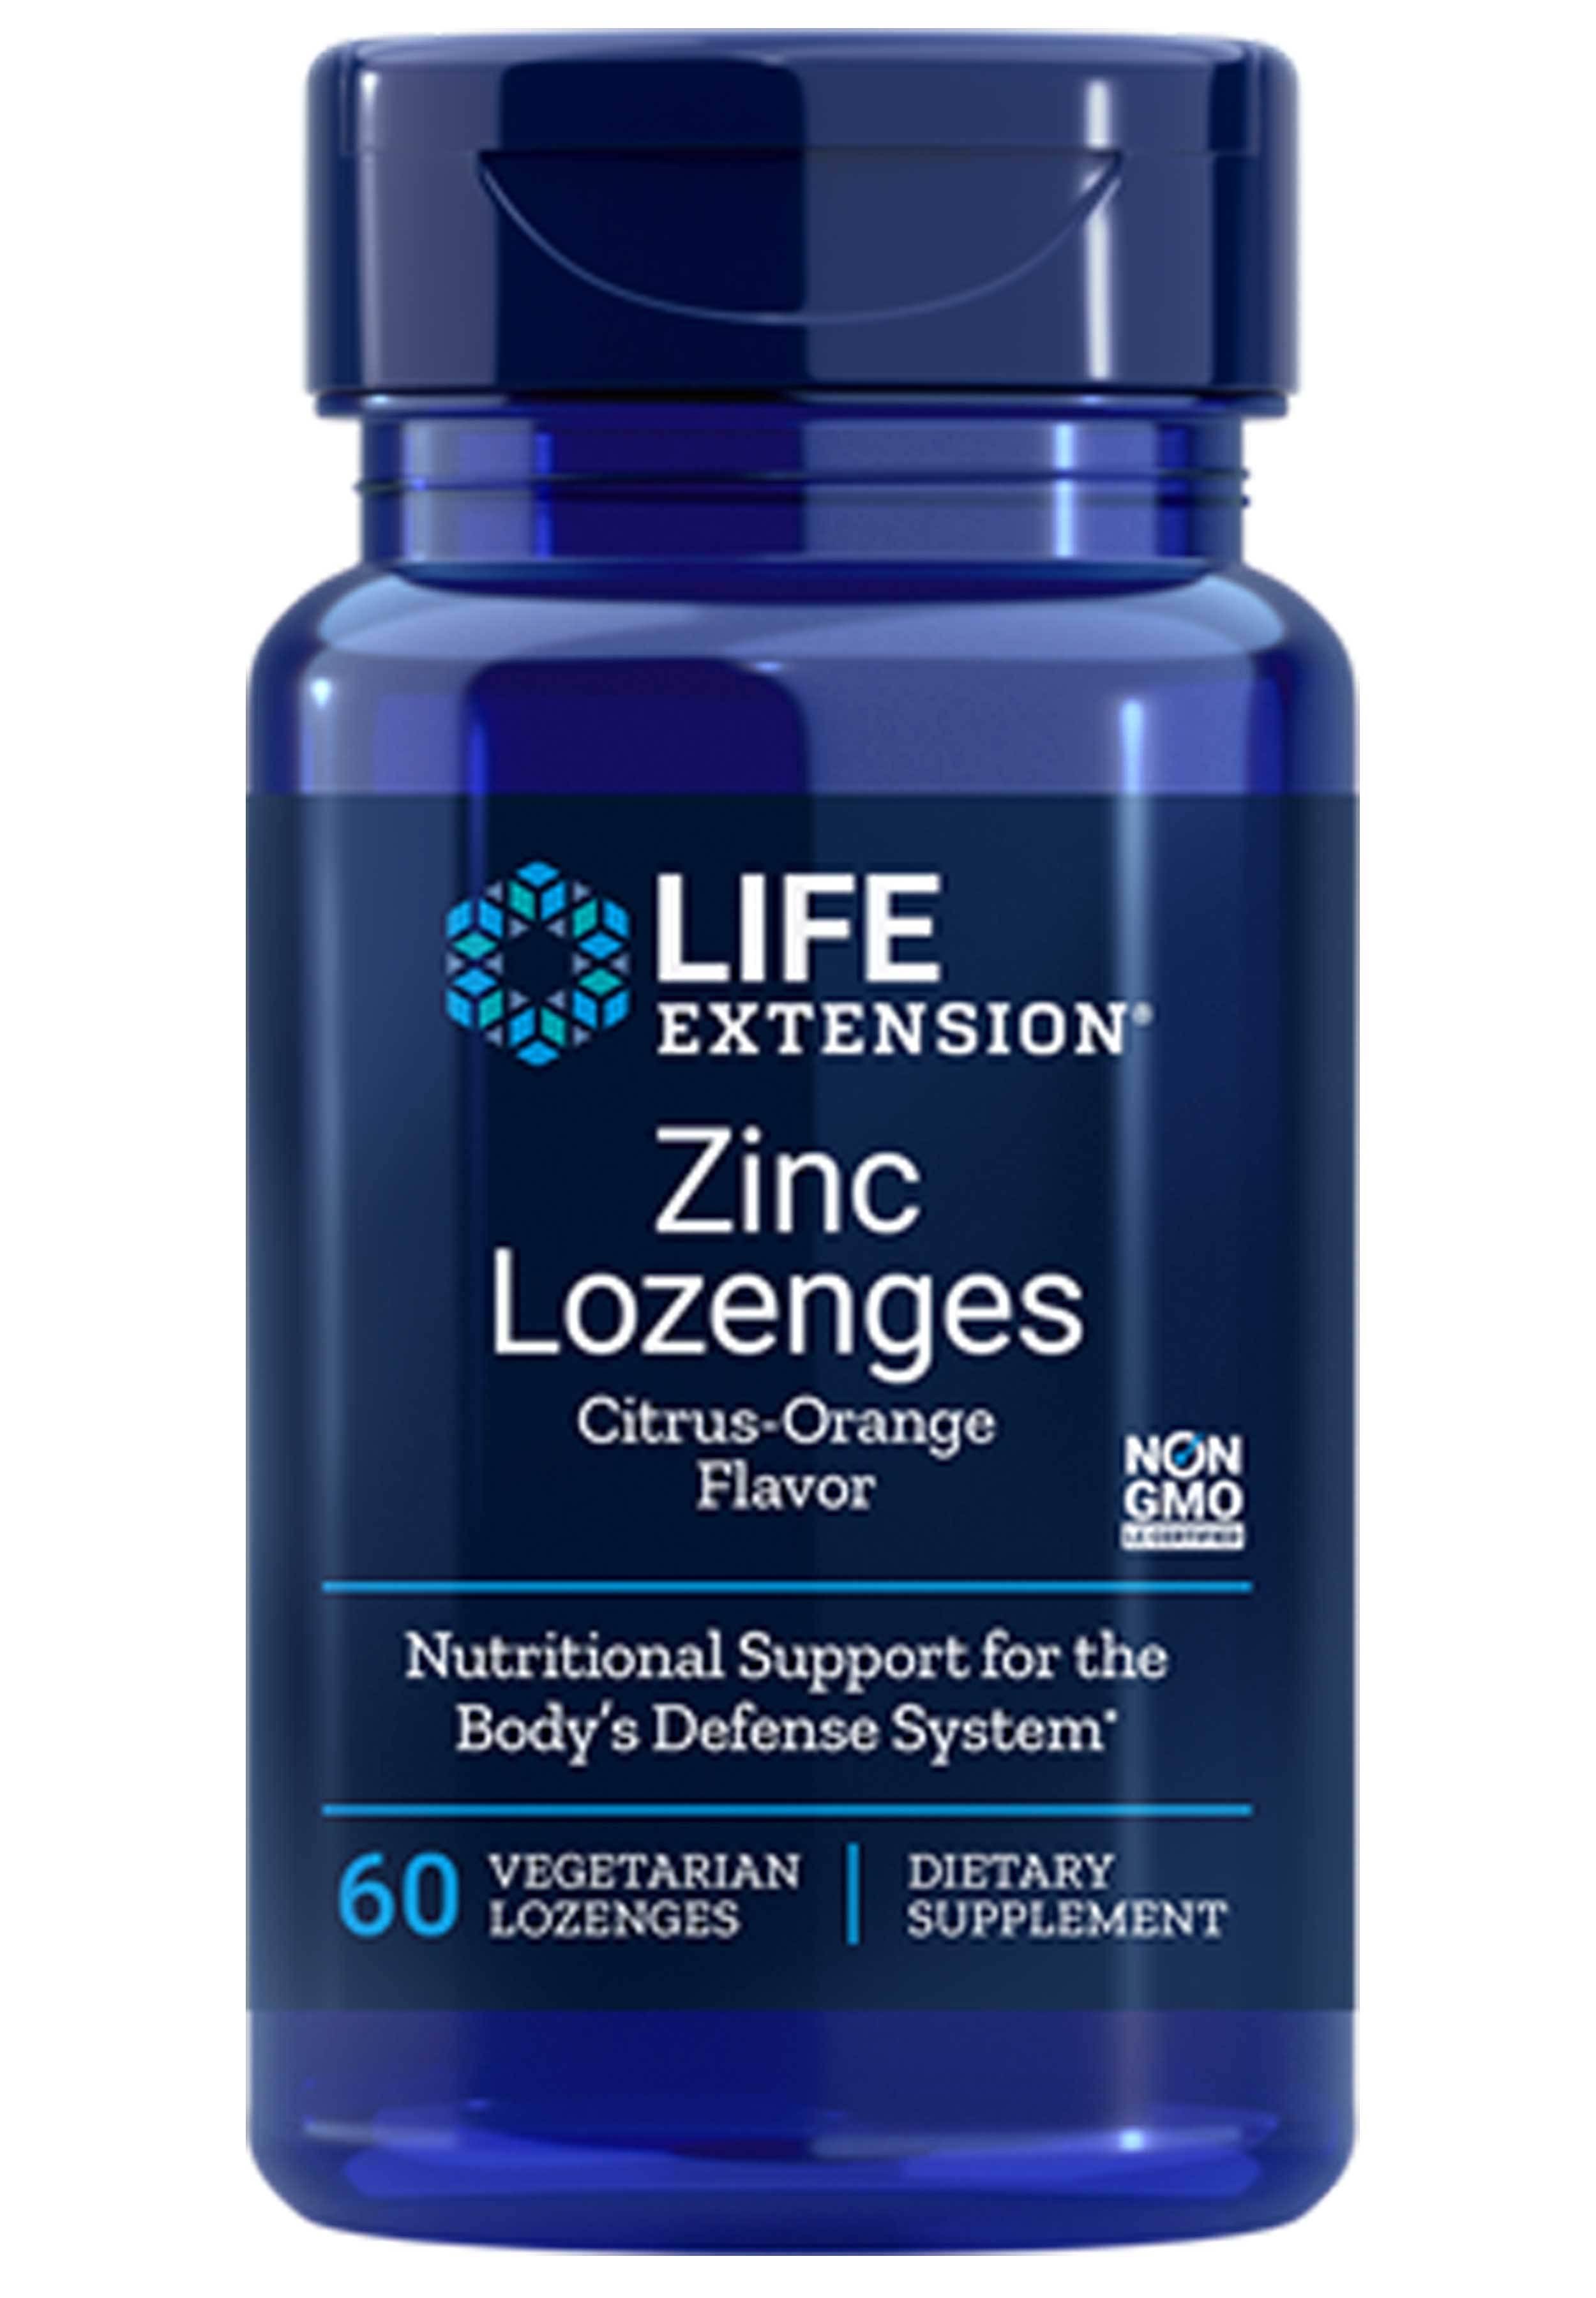 Zinc Lozenges Life Extension Supplement - Natural Citrus Orange Flavor, 60ct